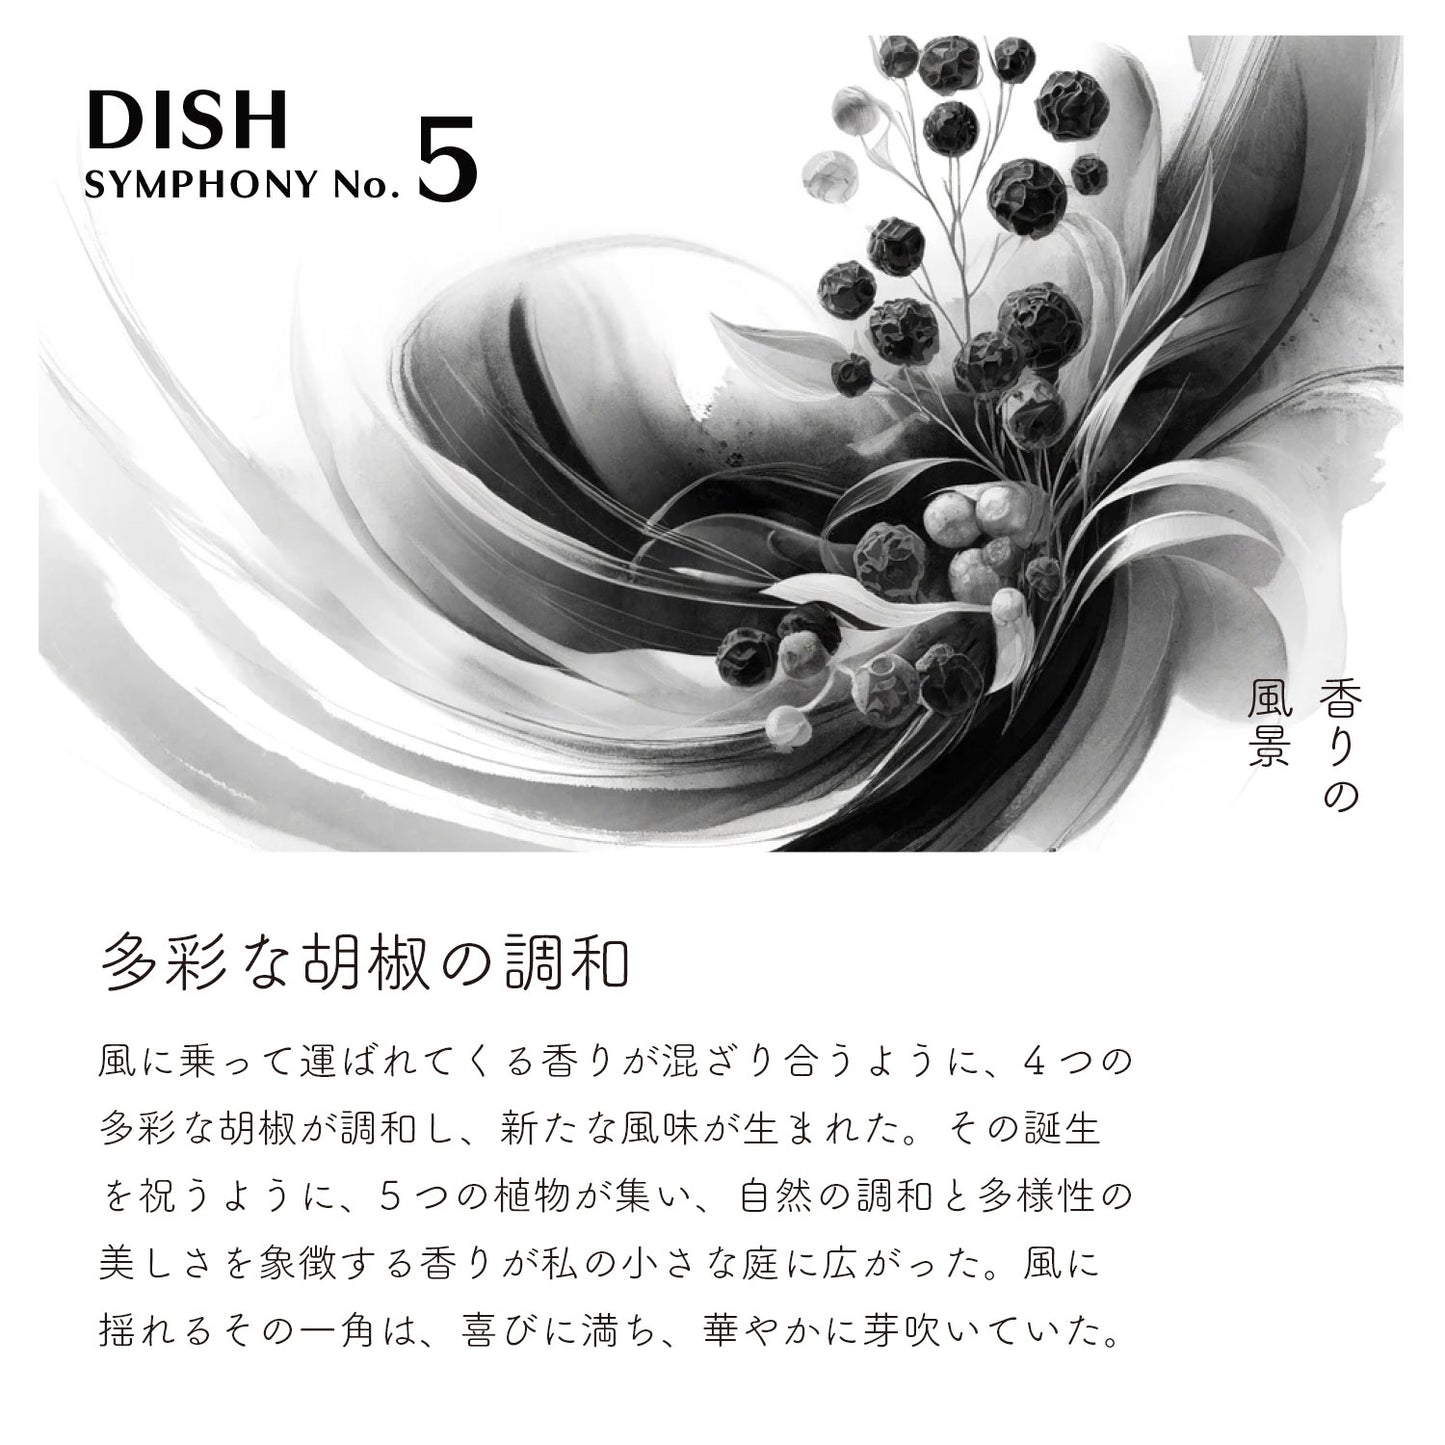 ディッシュ シンフォニーNo. 5（容器無しタイプ）